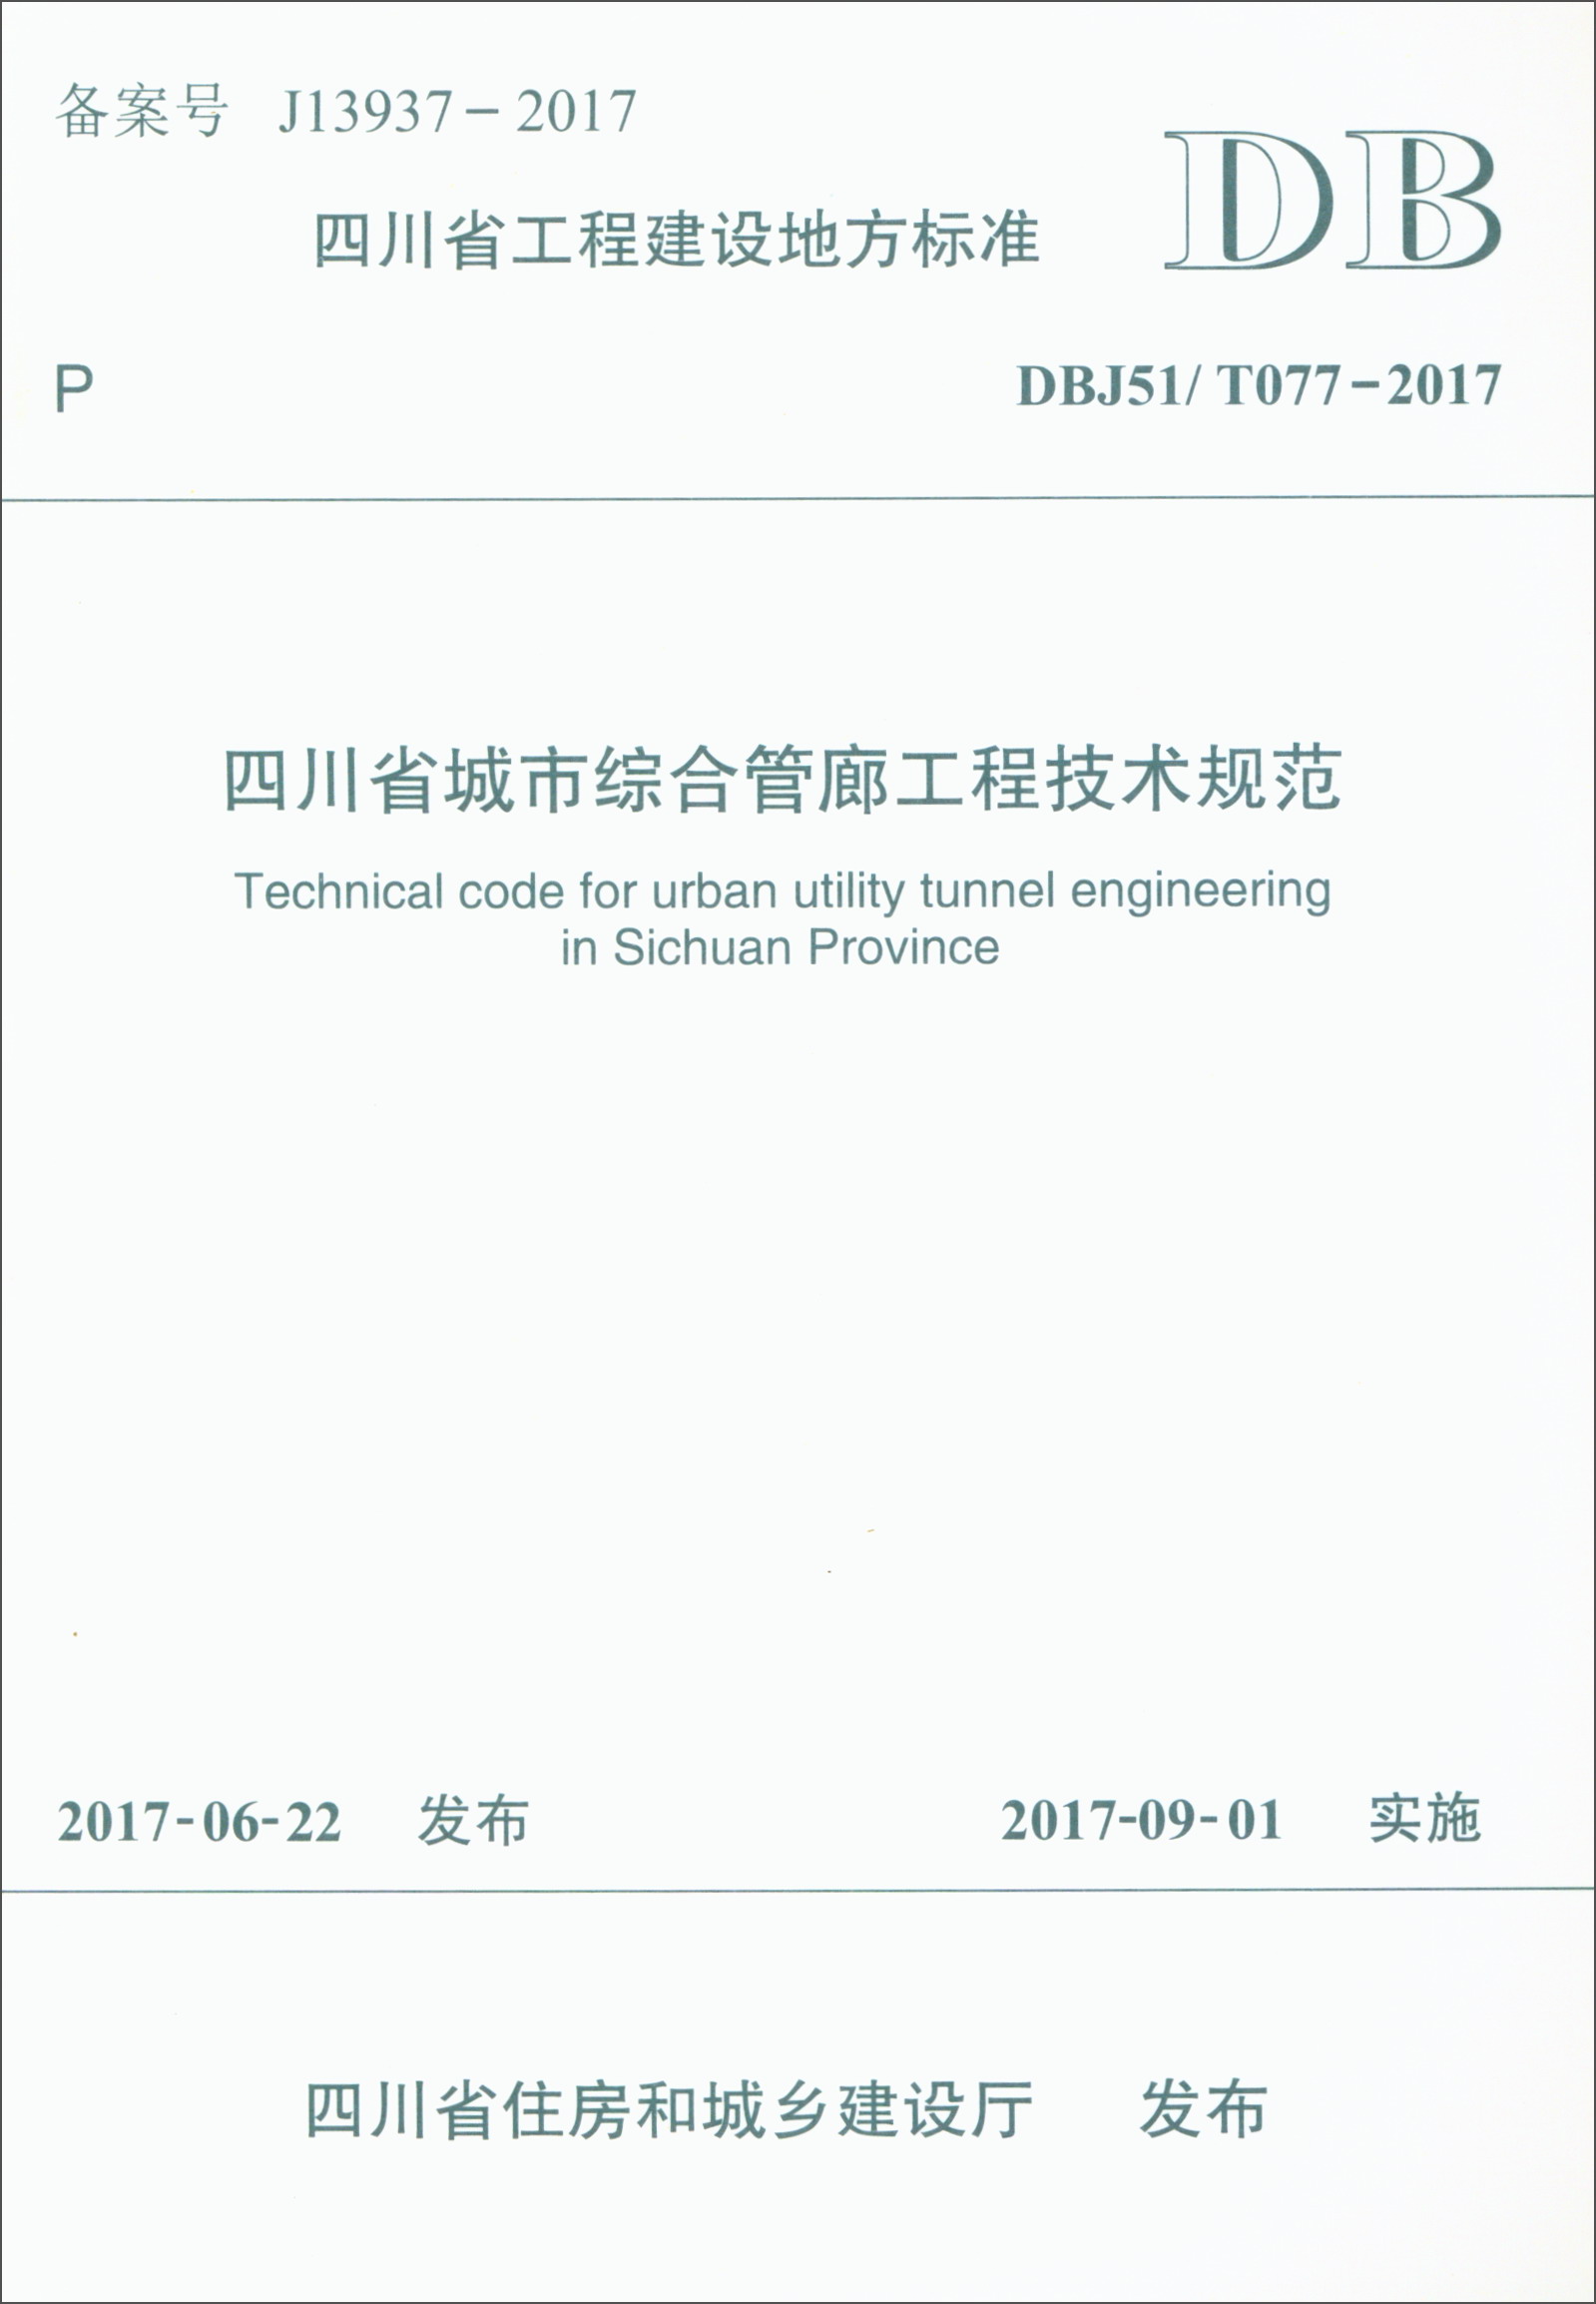 四川省工程建设地方标准（DBJ51/T077-2017）：四川省城市综合管廊工程技术规范 azw3格式下载